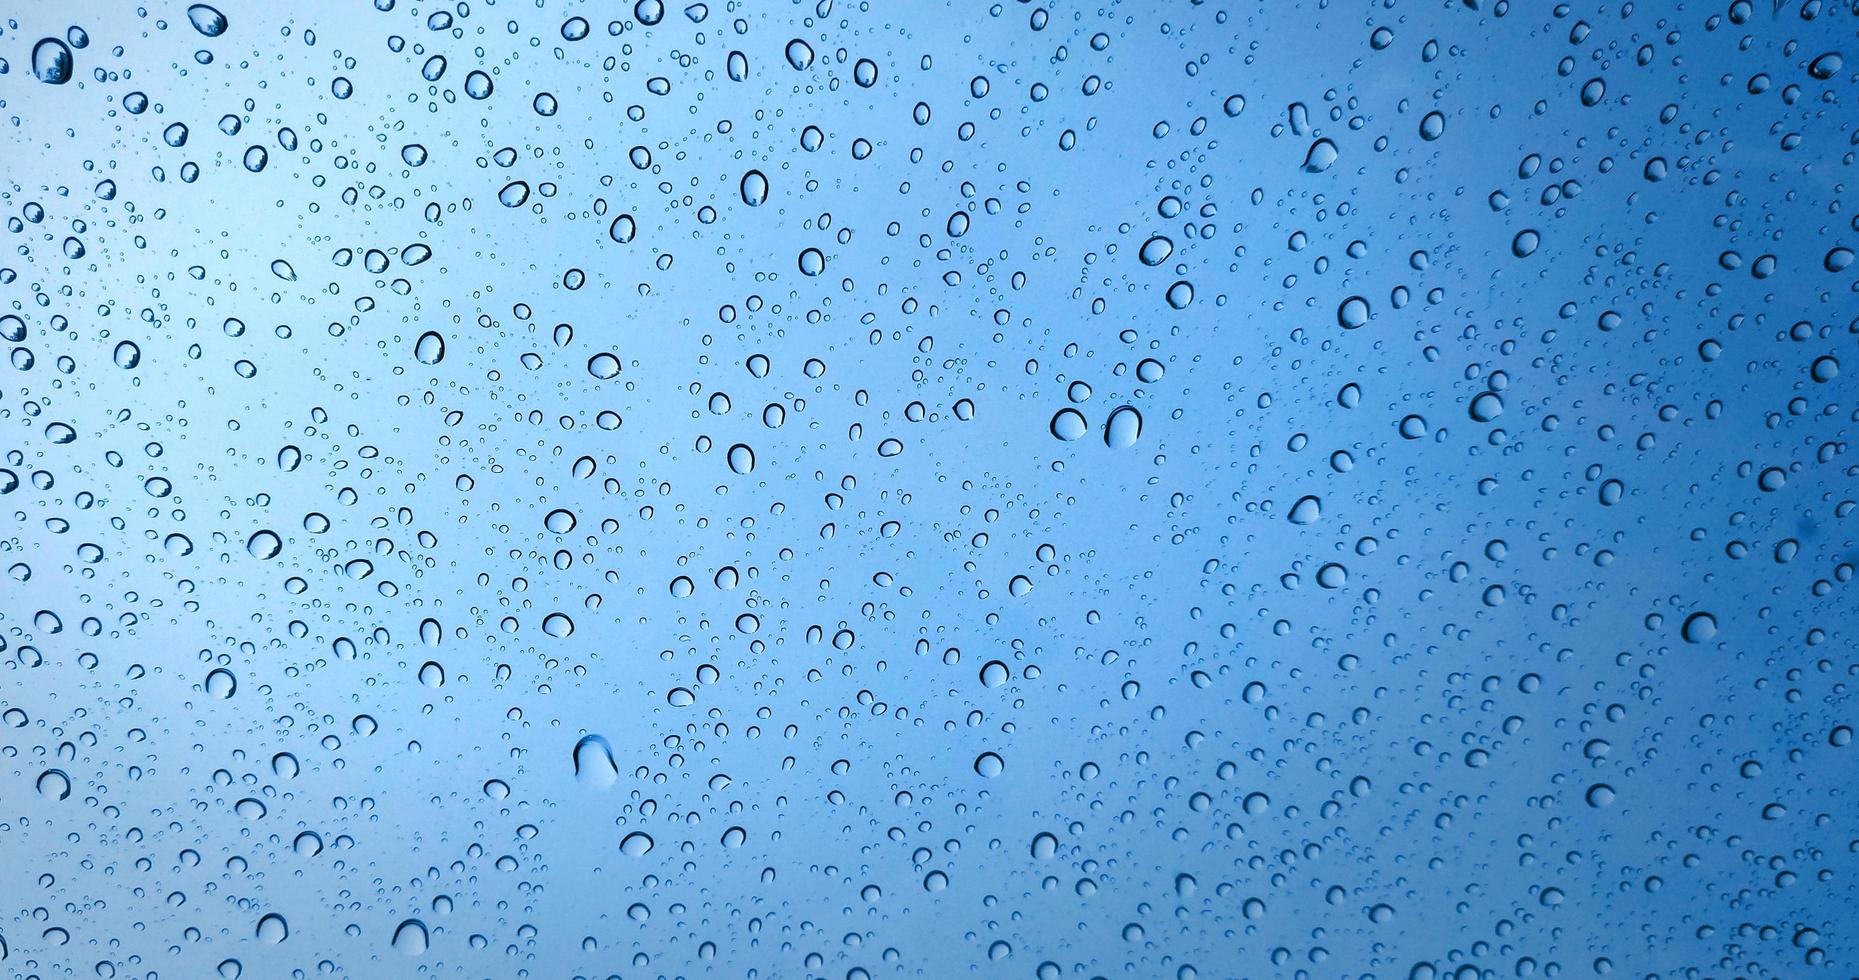 gotas de chuva no fundo da janela de vidro azul foto